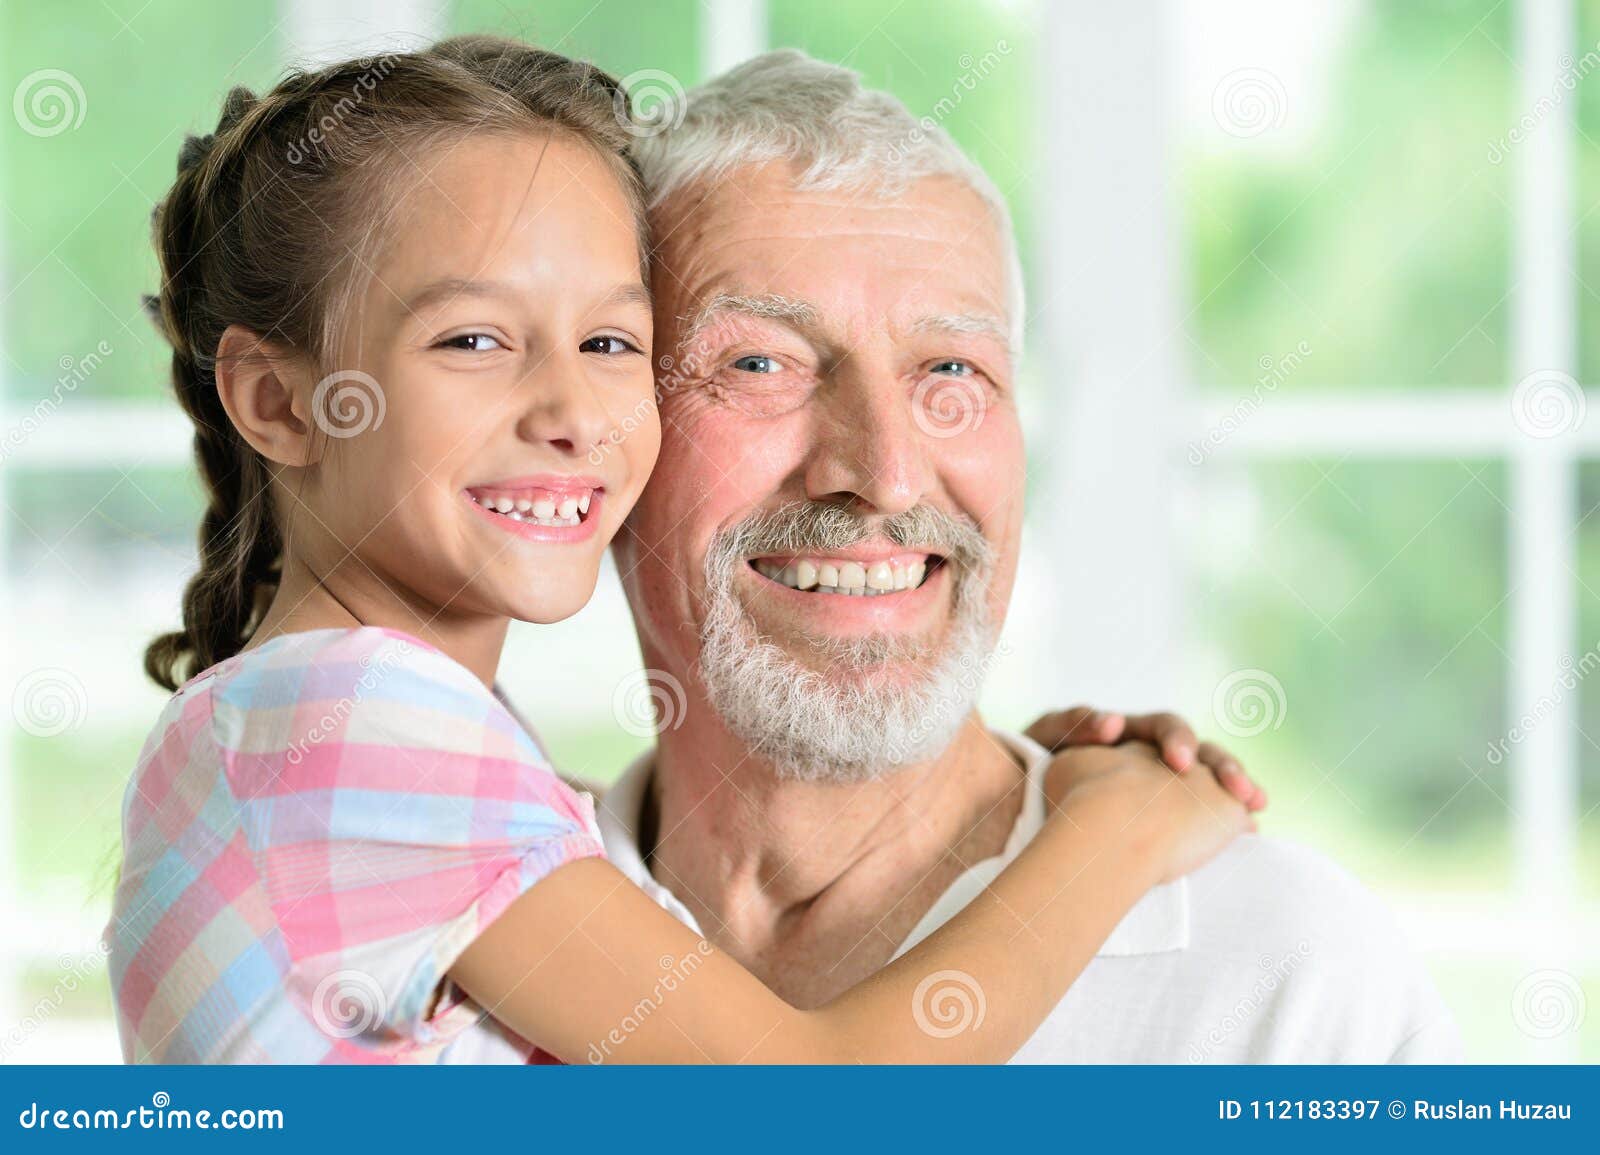 эротика малолетка с дедом (120) фото